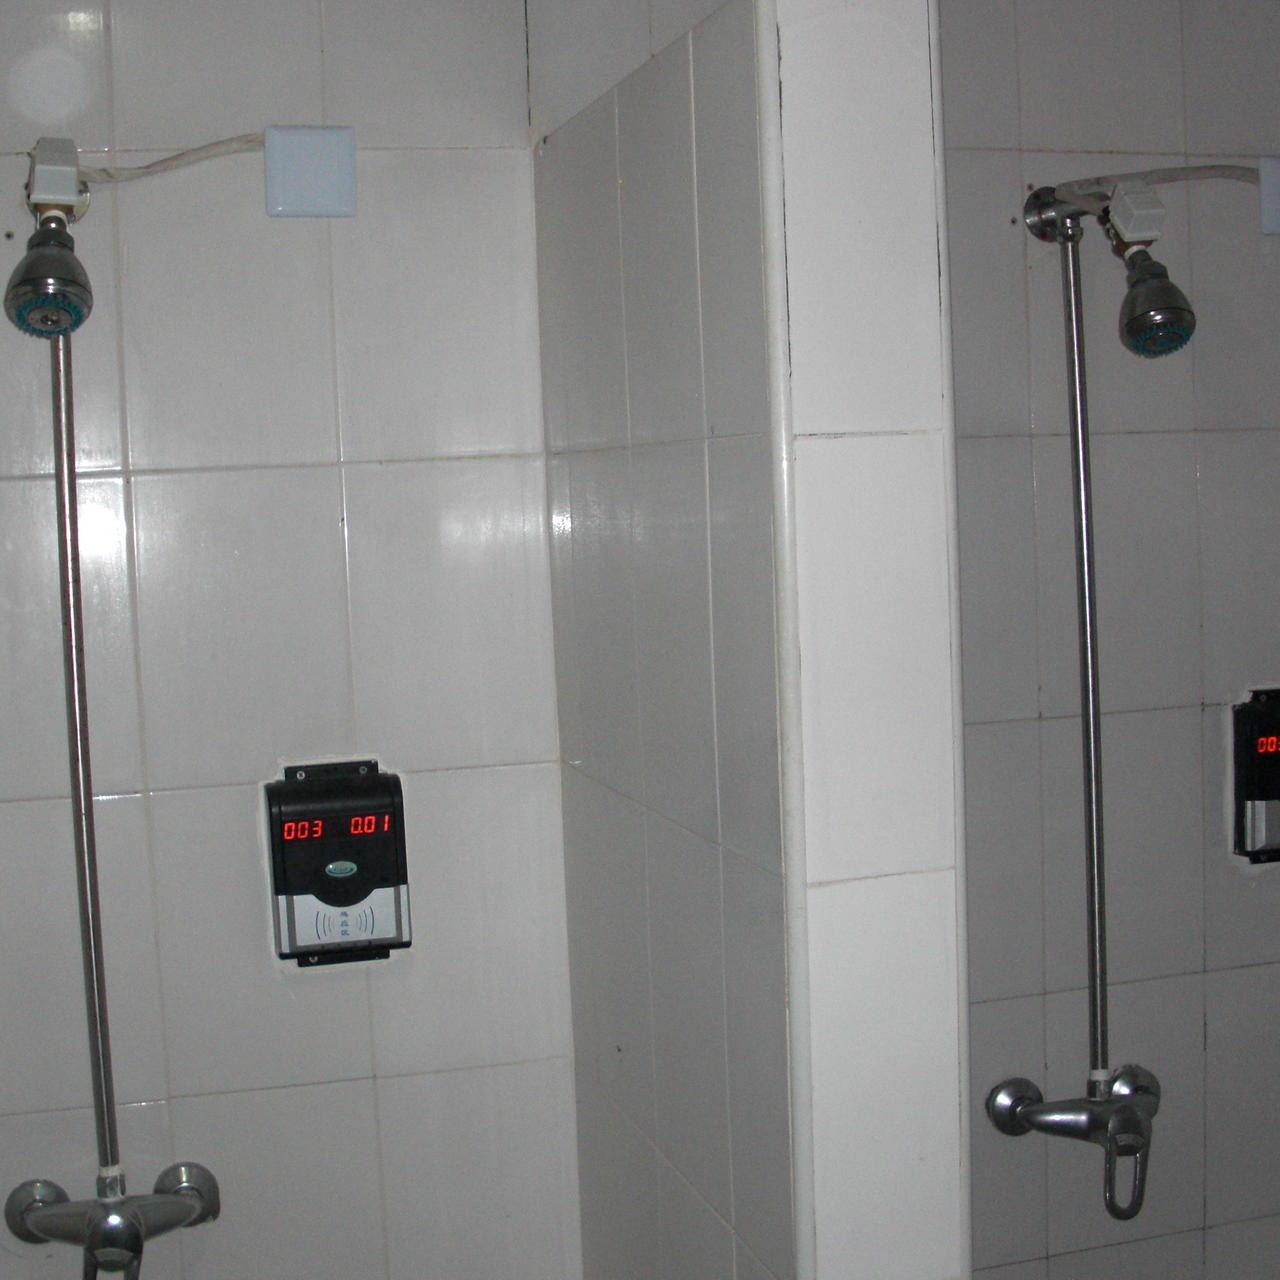 兴天下HF-660 IC卡浴室水控器,淋浴节水控制器,IC卡水控机